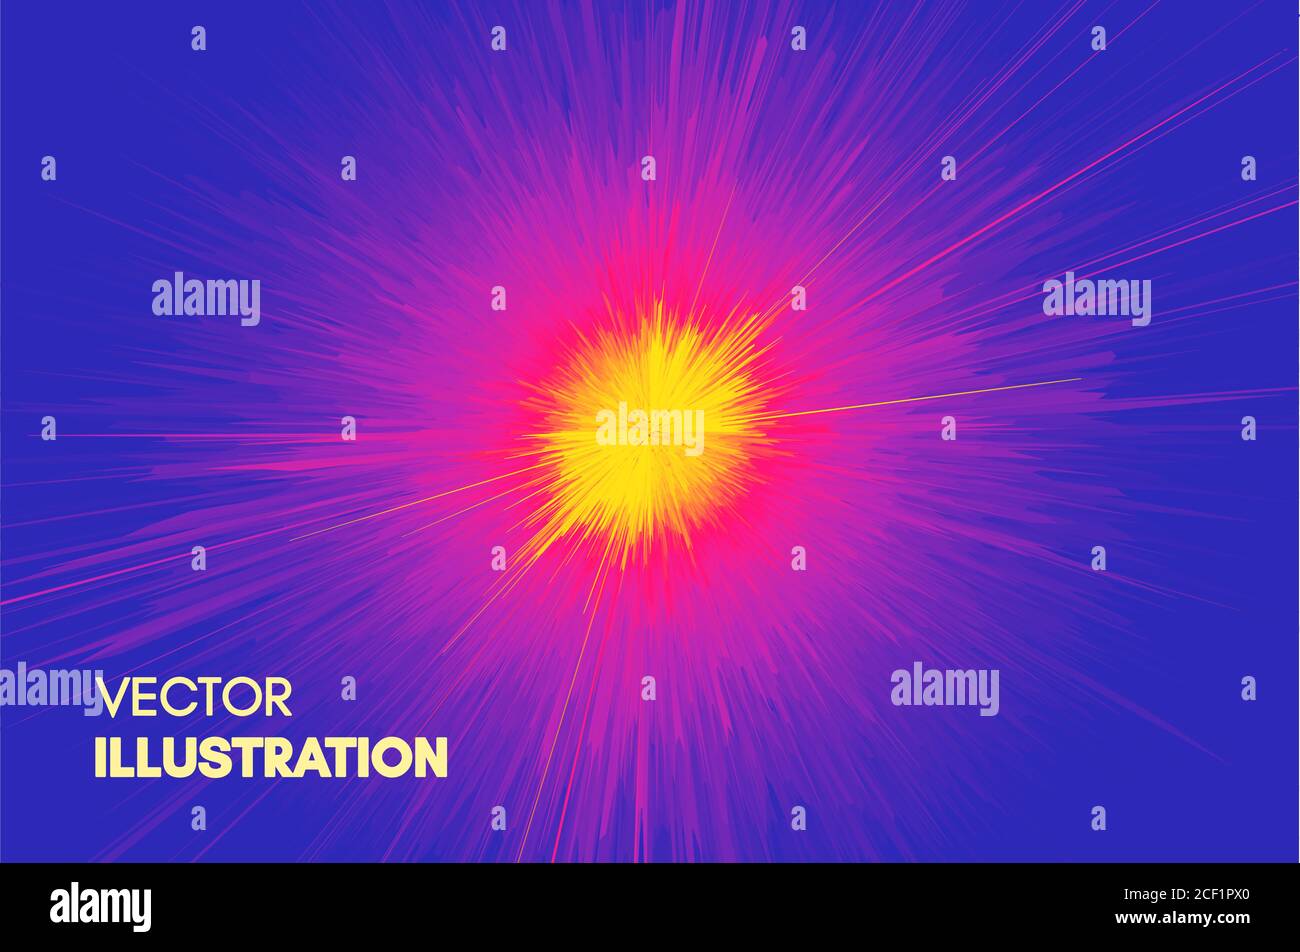 Hintergrund mit Explosion. Starburst dynamische Linien. Solar oder Starlight Emission. 3d-futuristische Technologie Stil. Vector Illustration. Stock Vektor